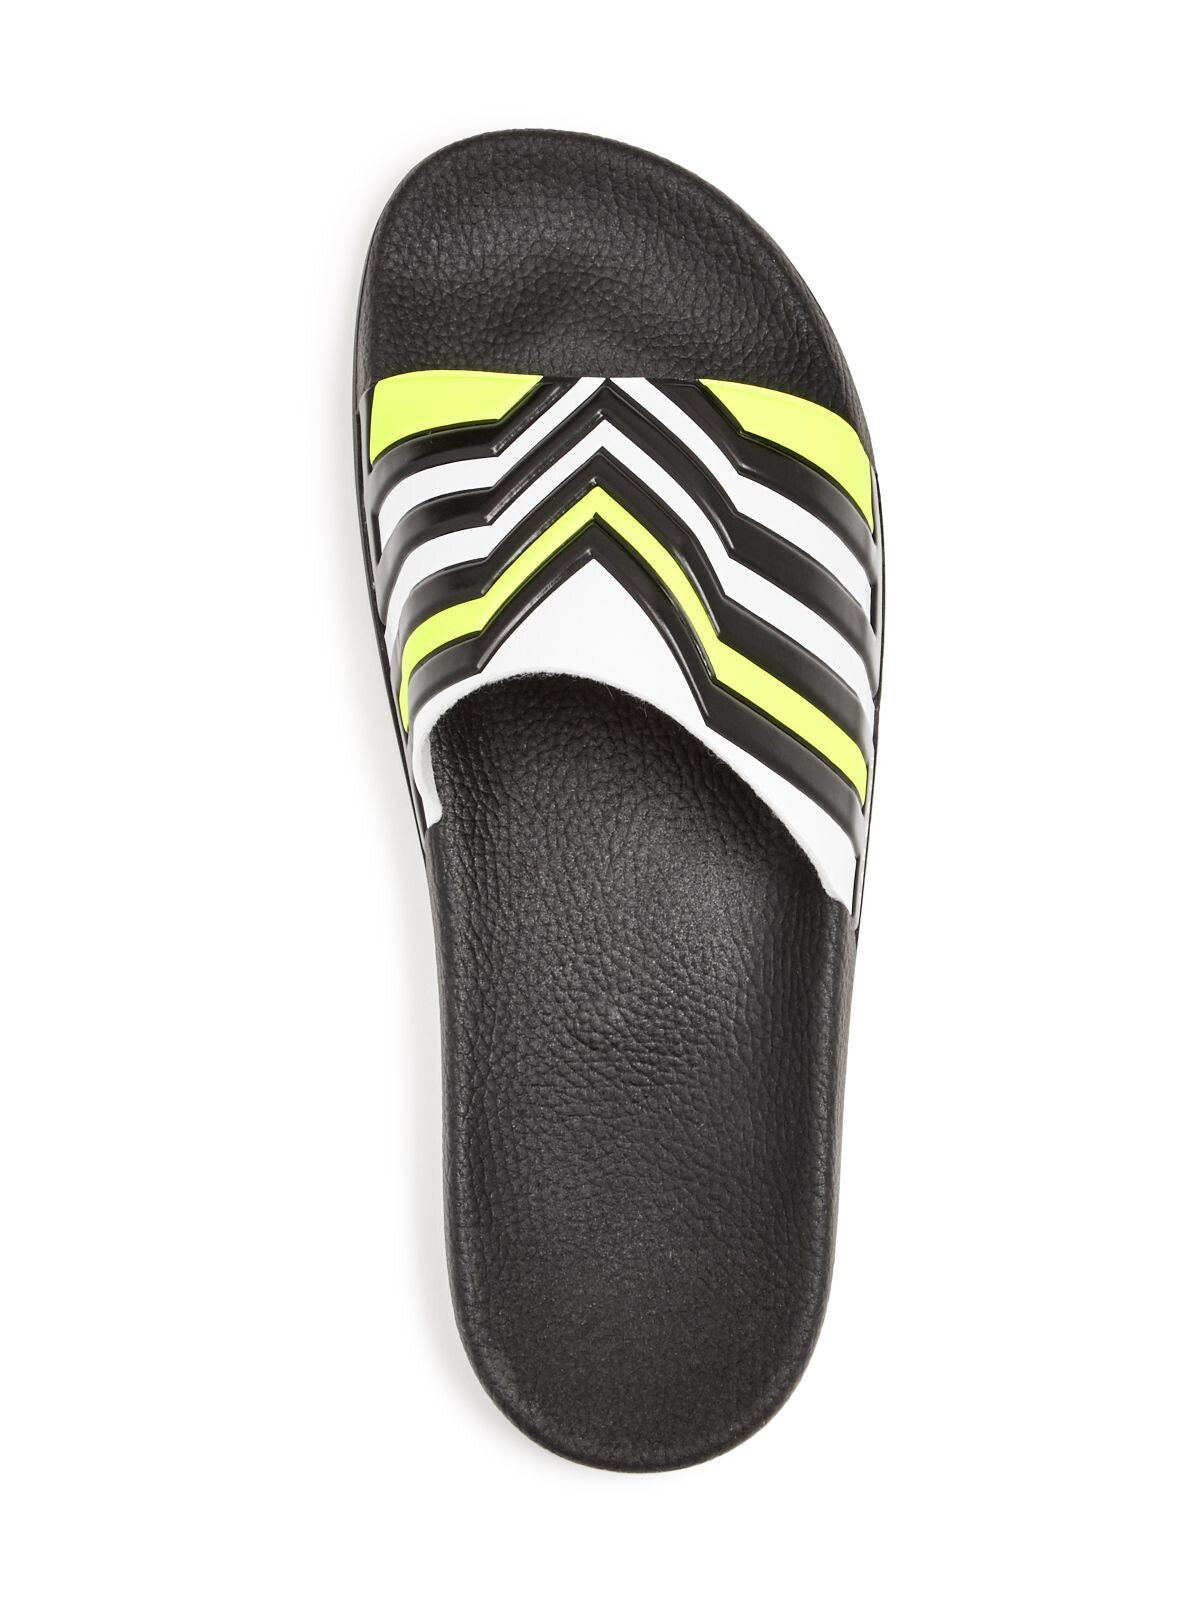 DAN WARD Mens Black Striped Round Toe Platform Slip On Slide Sandals Shoes 41